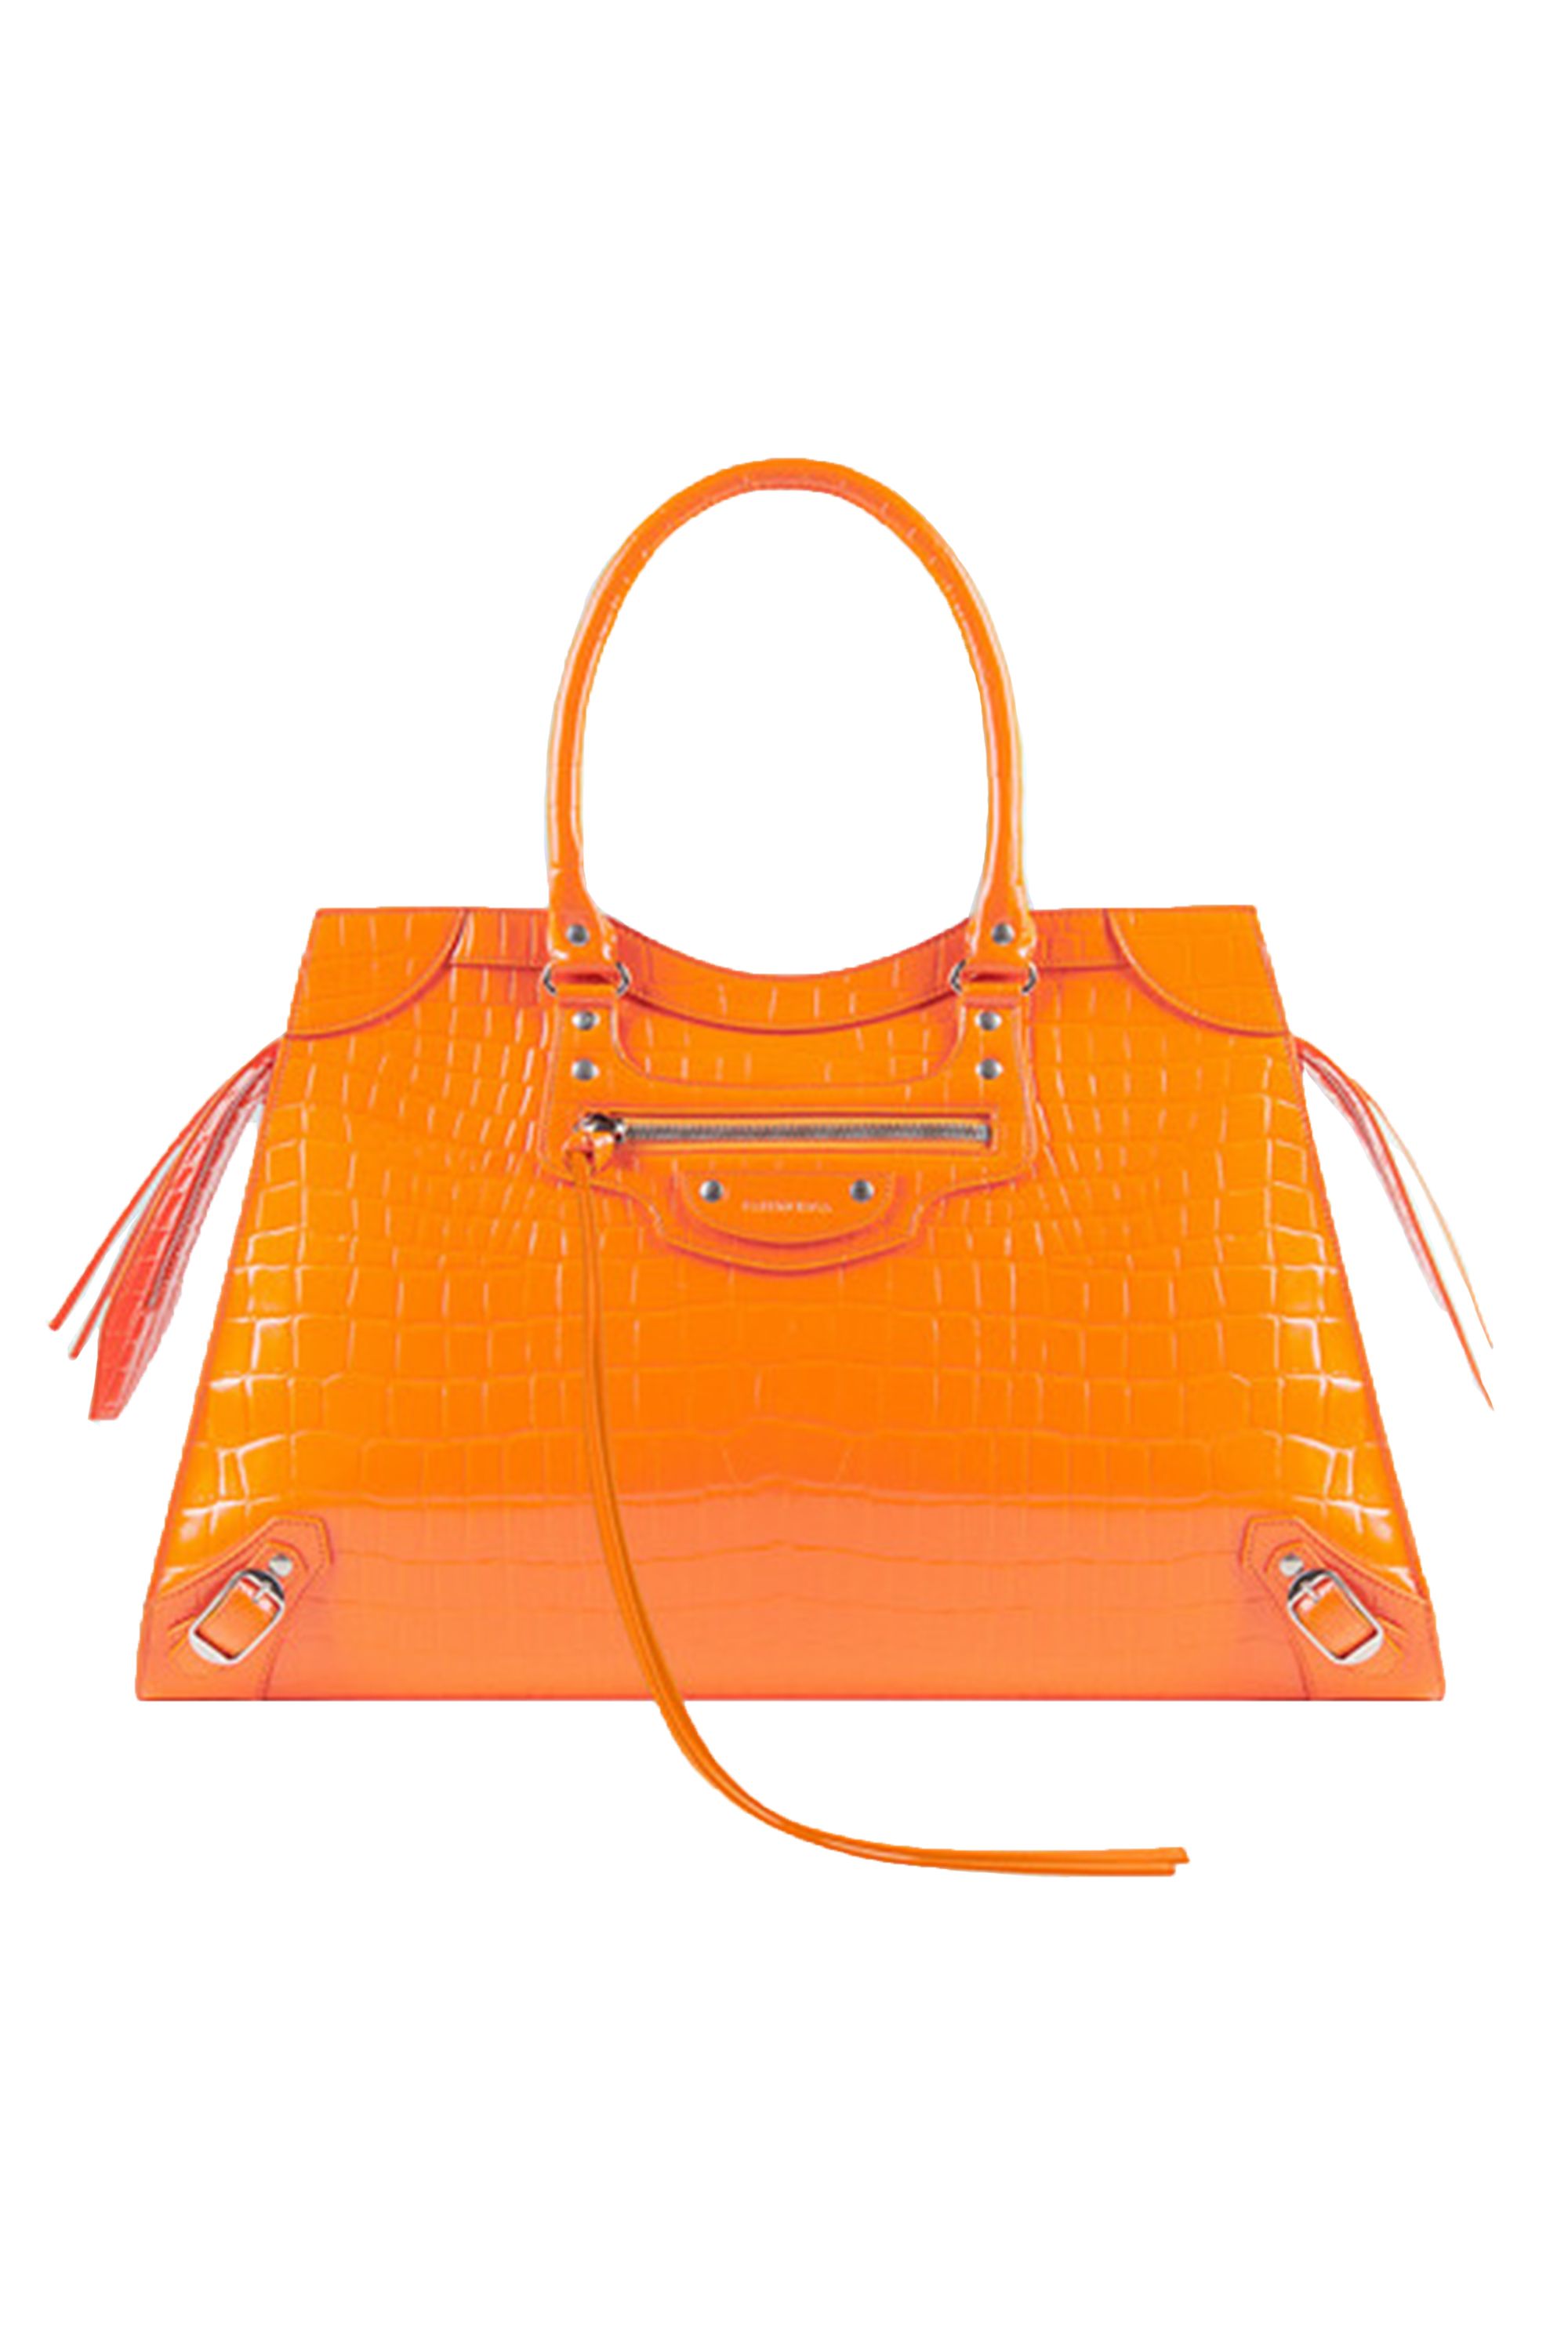 designer handbags balenciaga